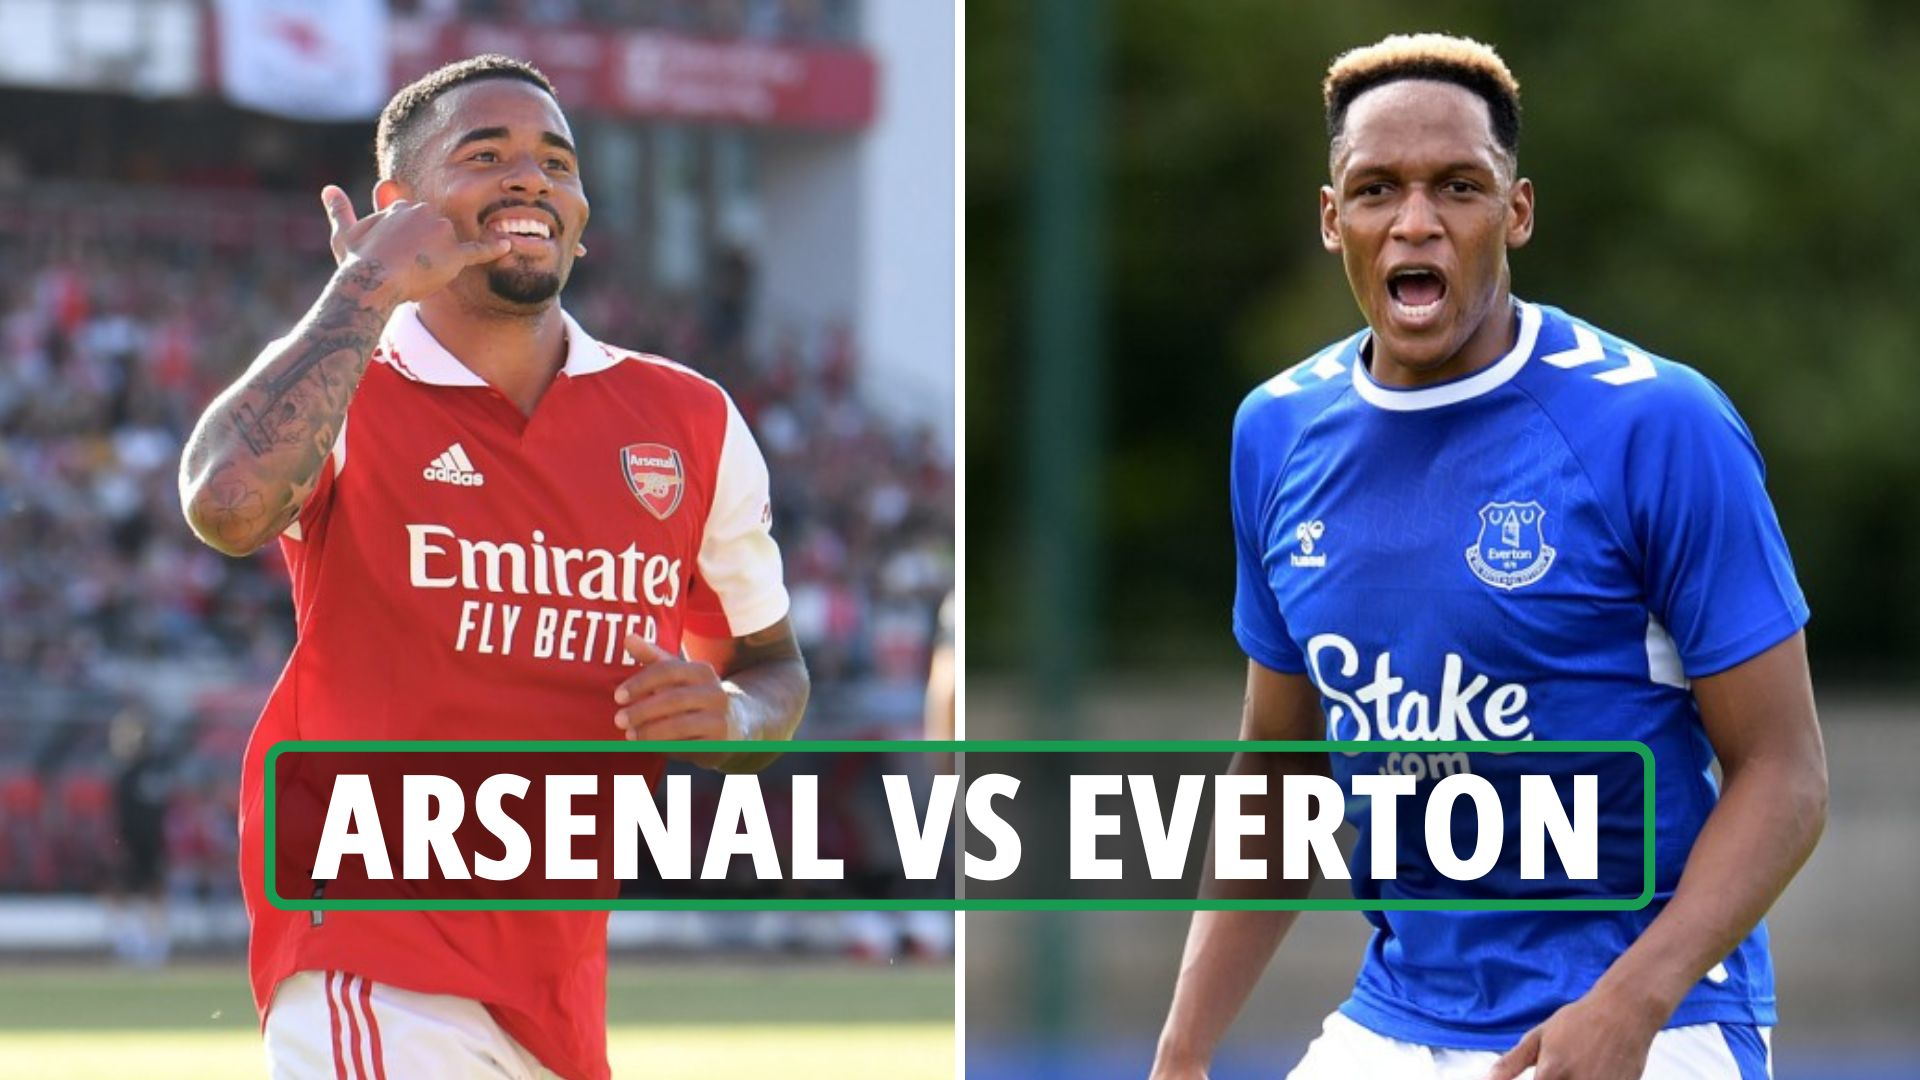 مشاهدة مباراة آرسنال و إيفرتون بث مباشر 16-07-2022 Arsenal vs Everton